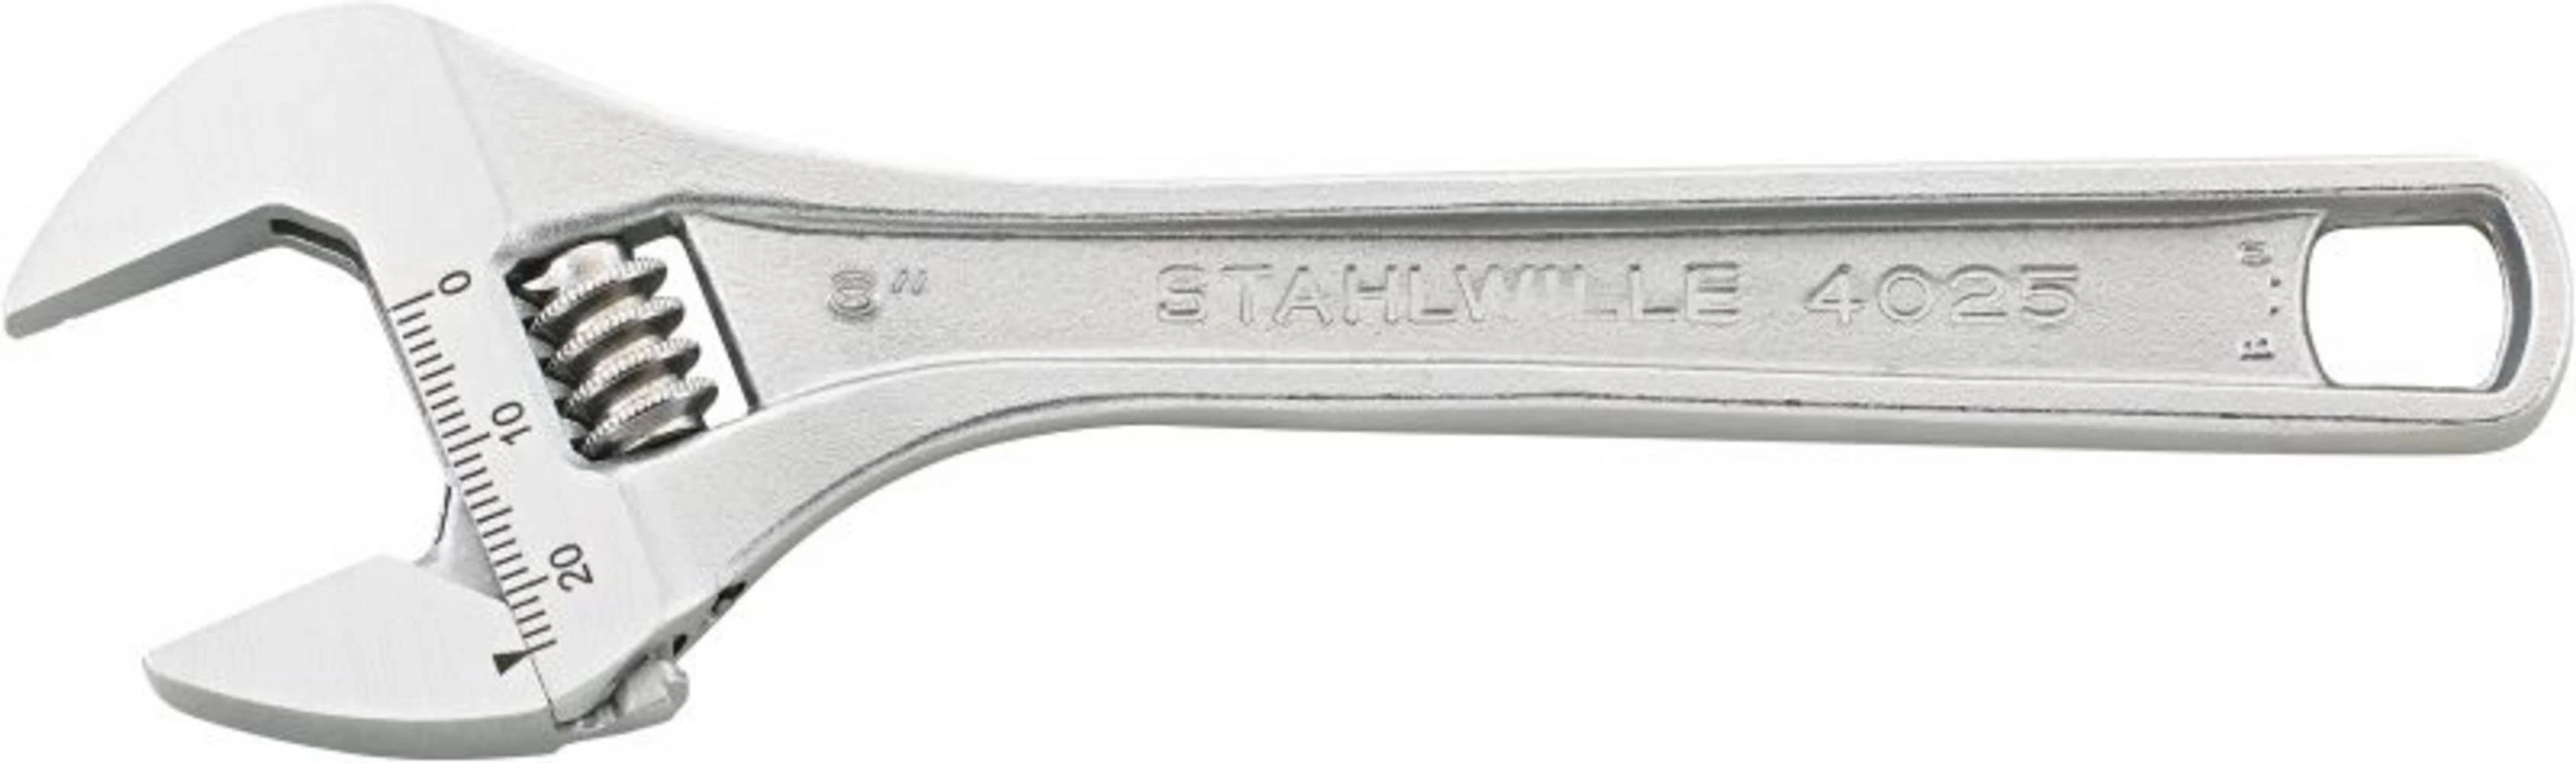 Silber Schraubenschlüssel, 40250110 STAHLWILLE